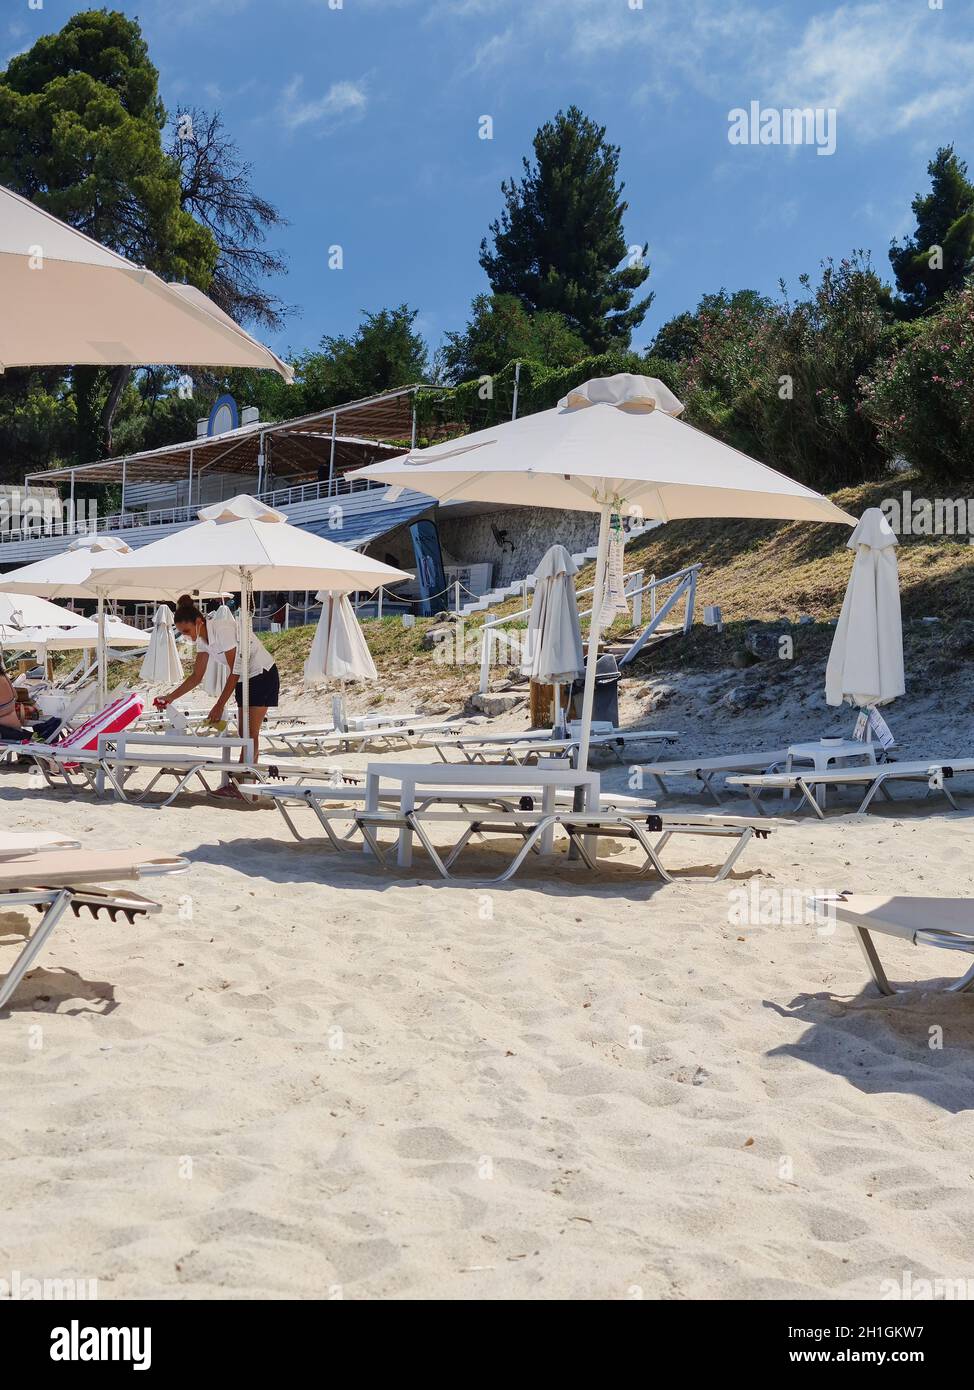 Chalkidiki, Grecia - Julio de 30 2020: Limpieza eficaz de la barra de playa para tomar el sol muebles para reducir el riesgo de infecciones covid-19. Aplicación de solutio desinfectante Foto de stock